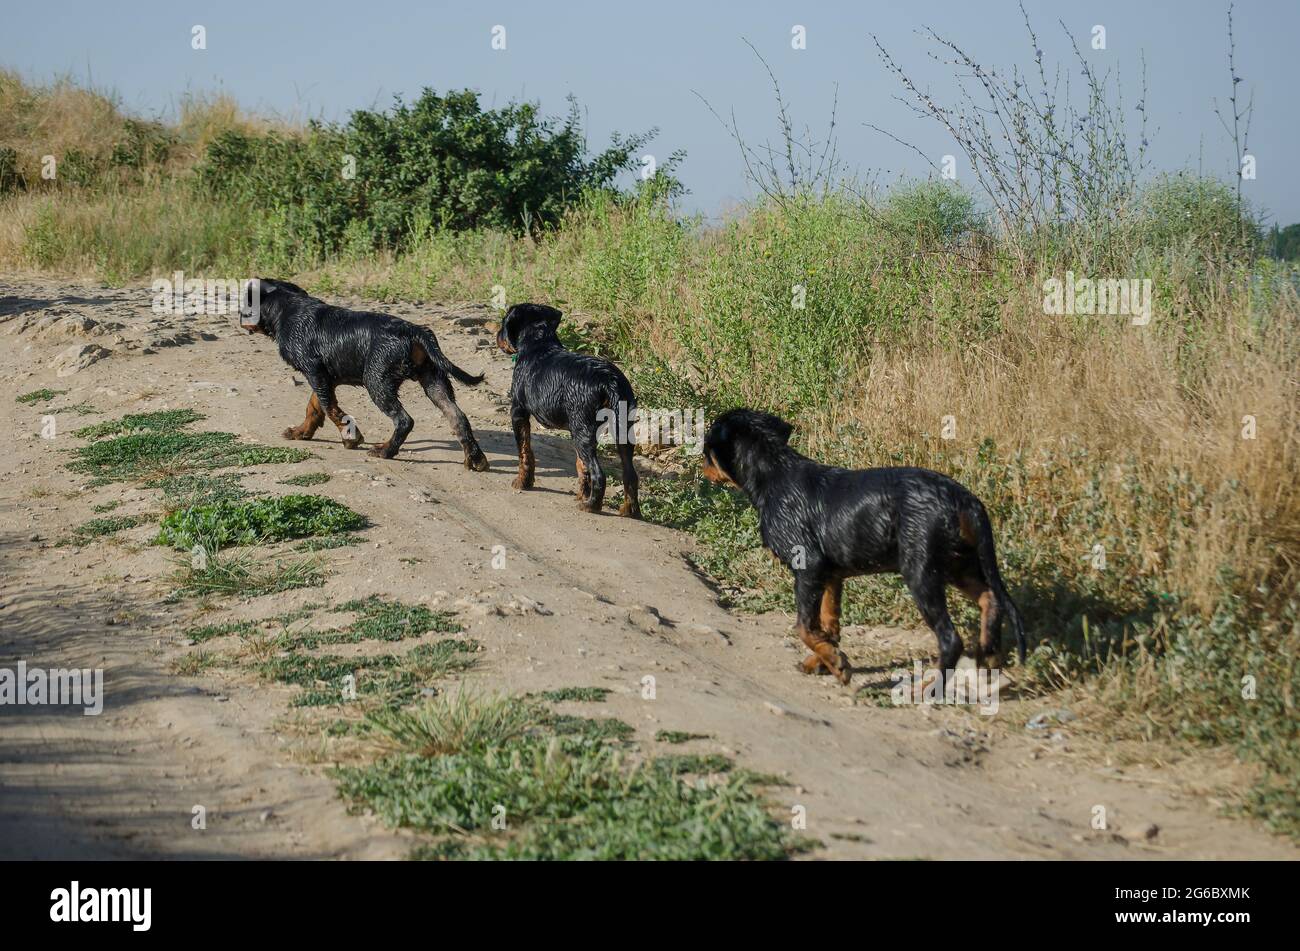 Tres perros jóvenes caminando por un camino de tierra. Humedezca los  cachorros Rottweiler de tres meses de edad después de nadar en el mar.  Cachorros de la misma camada. Perrera. Atrás Fotografía